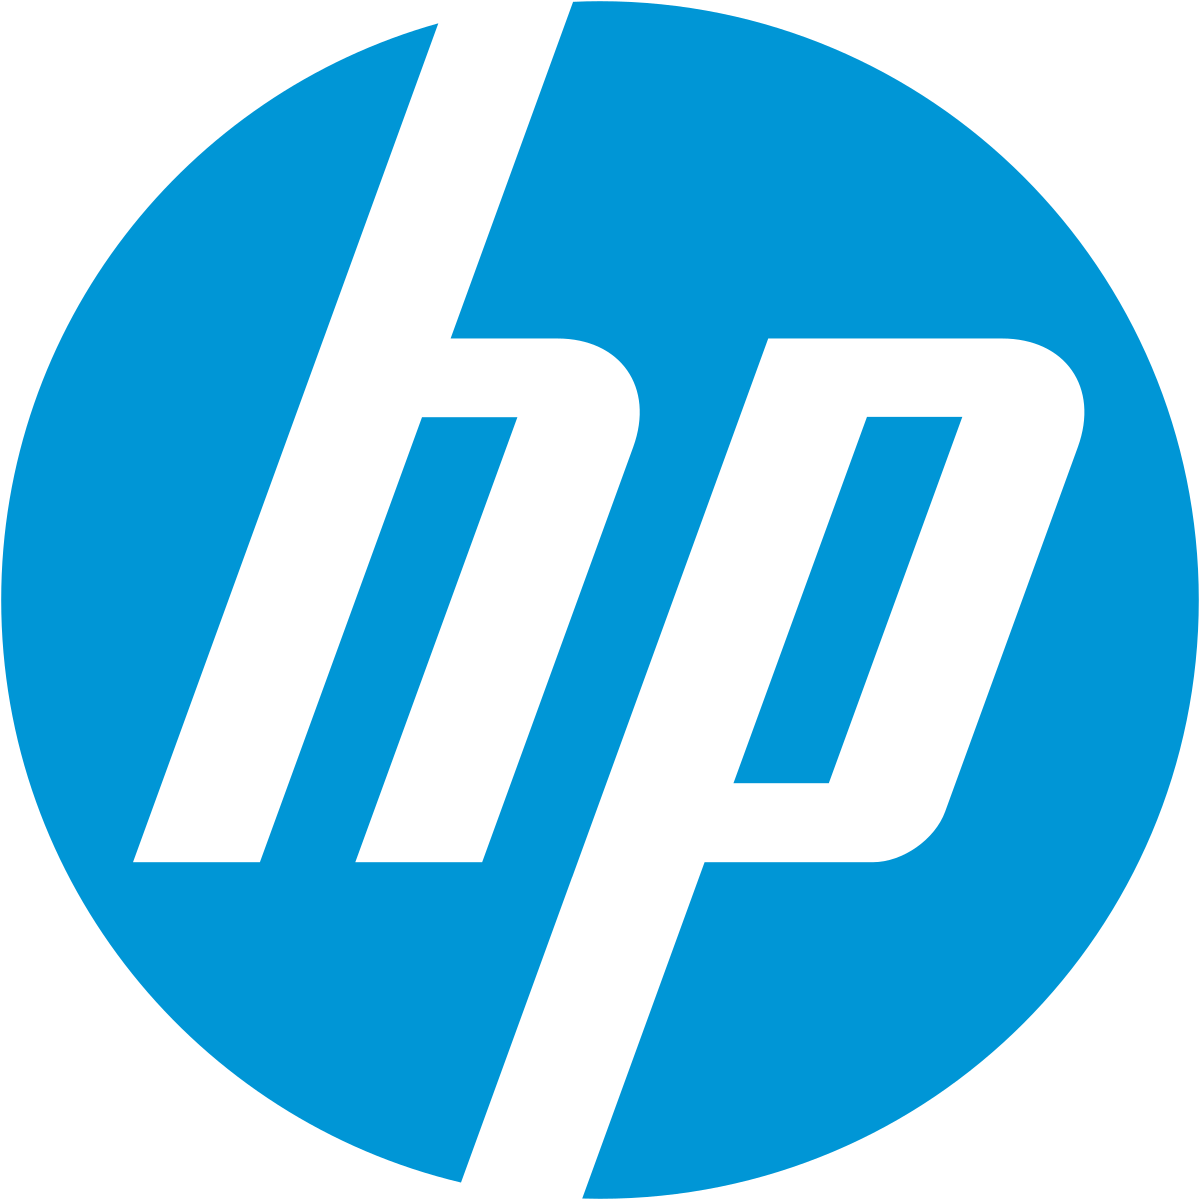 HP Pavilion Logo - HP Pavilion (computer)